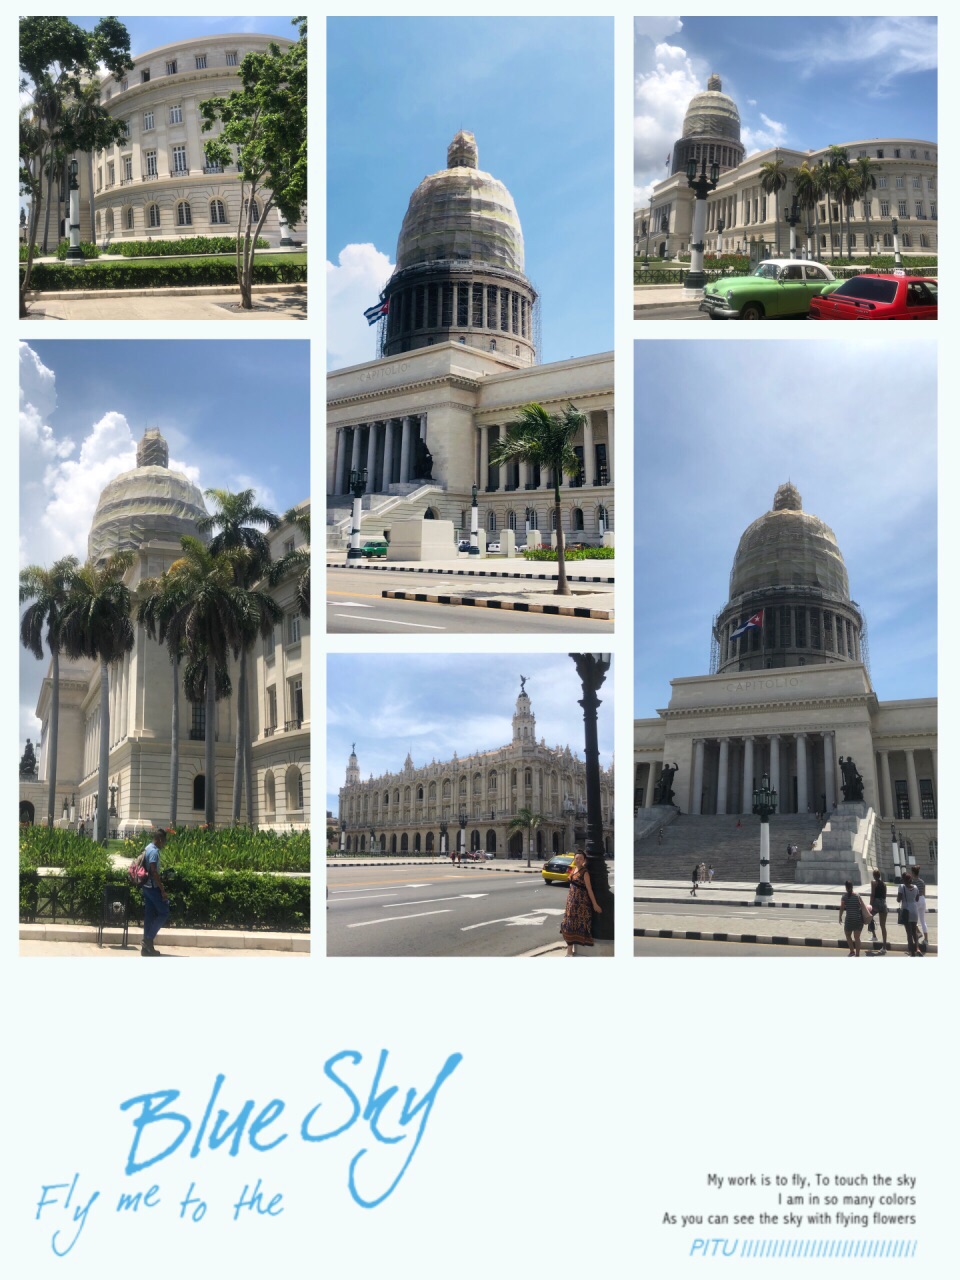 #激情一夏#水菱环球之旅の古巴🇨🇺国会大厦